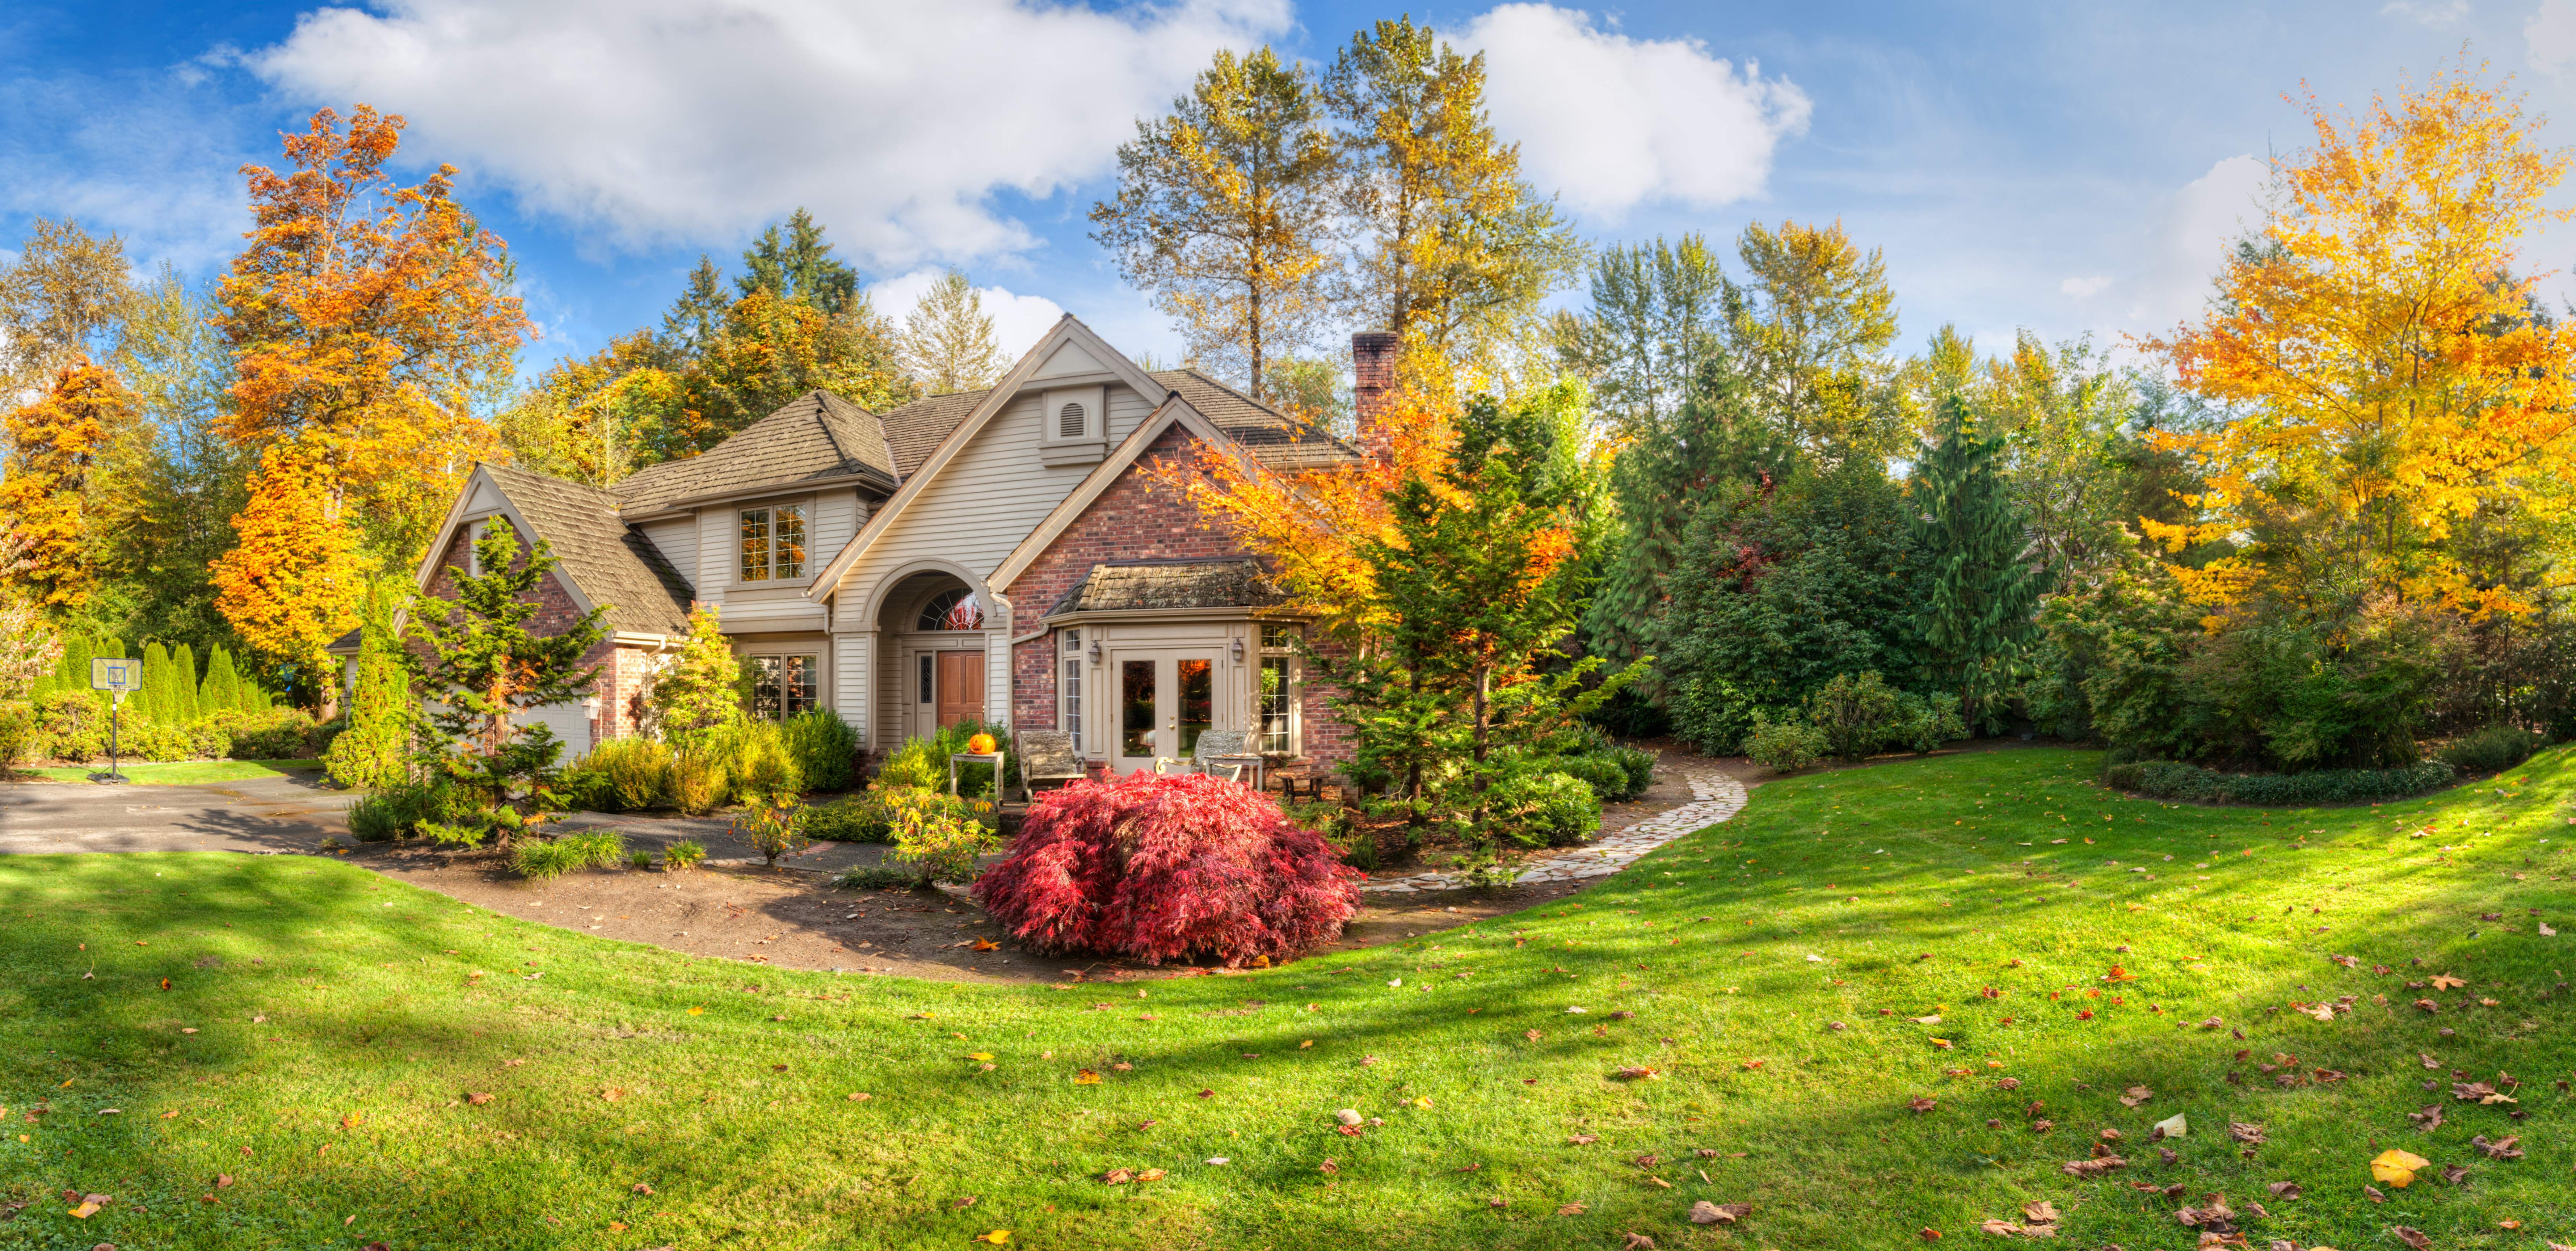 Beautiful home with yard in the Fall season